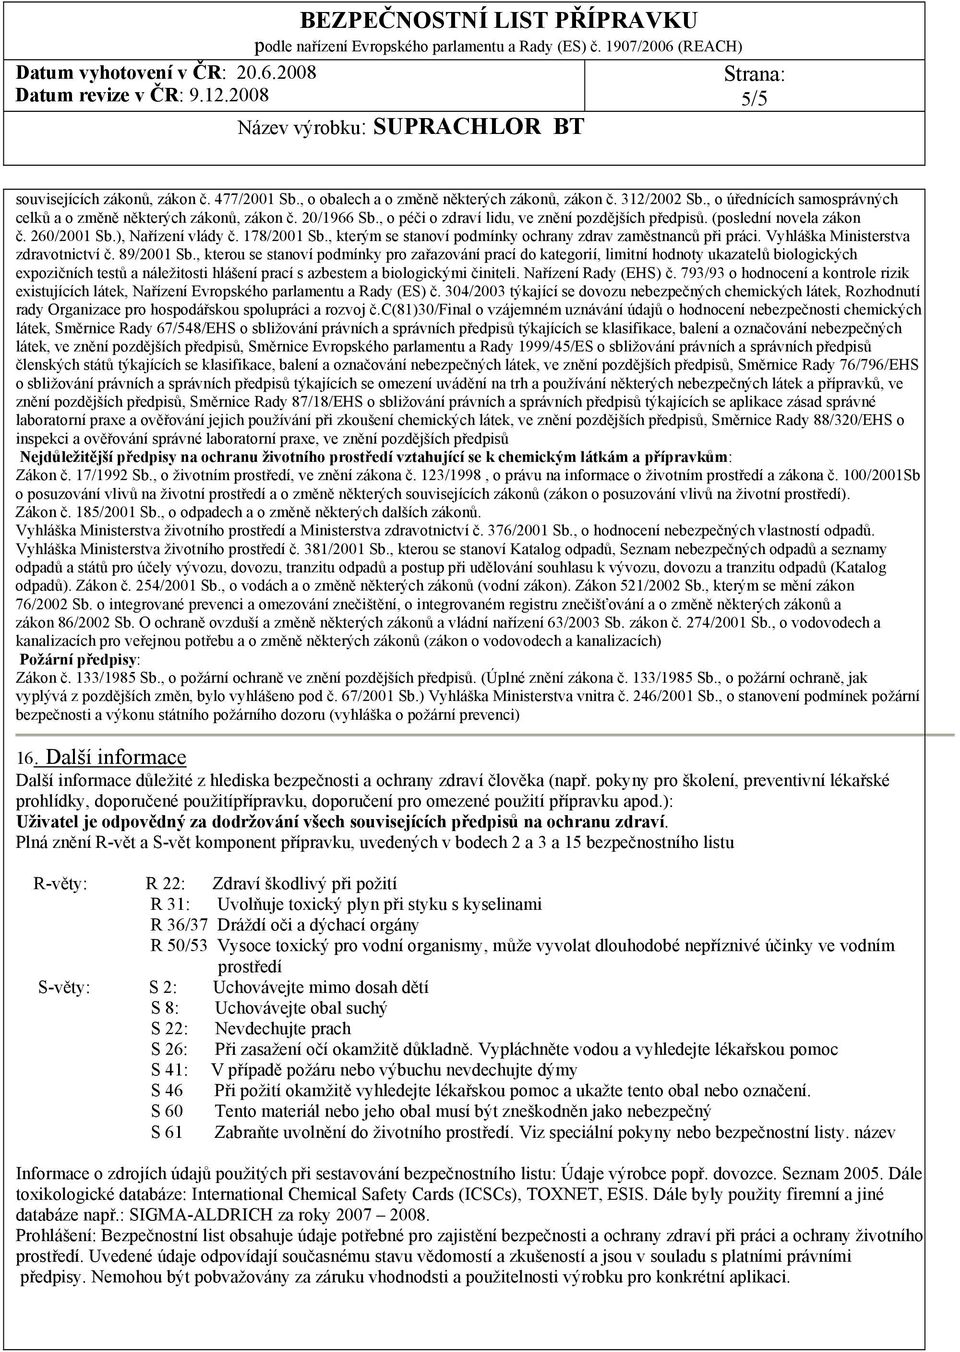 Vyhláška Ministerstva zdravotnictví č. 89/2001 Sb.